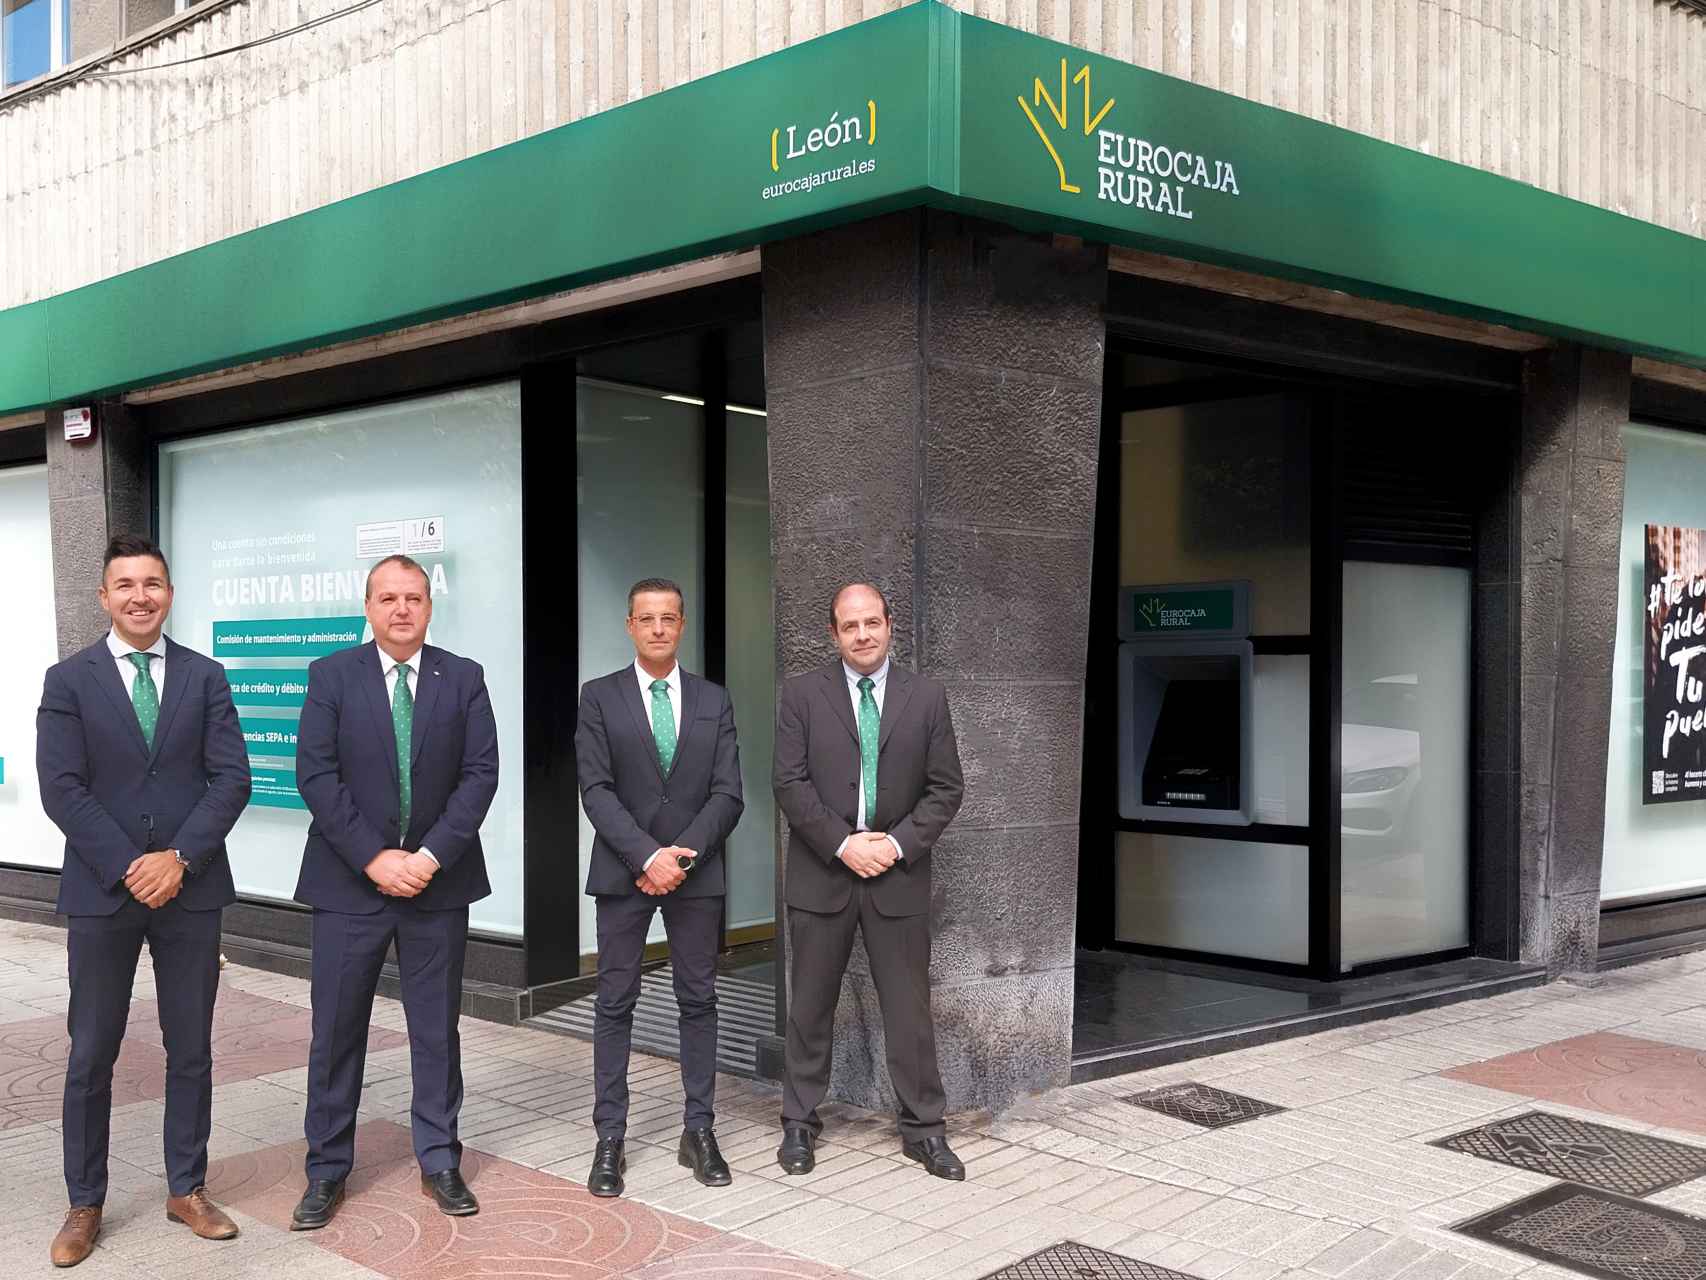 La nueva oficina de Eurocaja Rural en León capital.